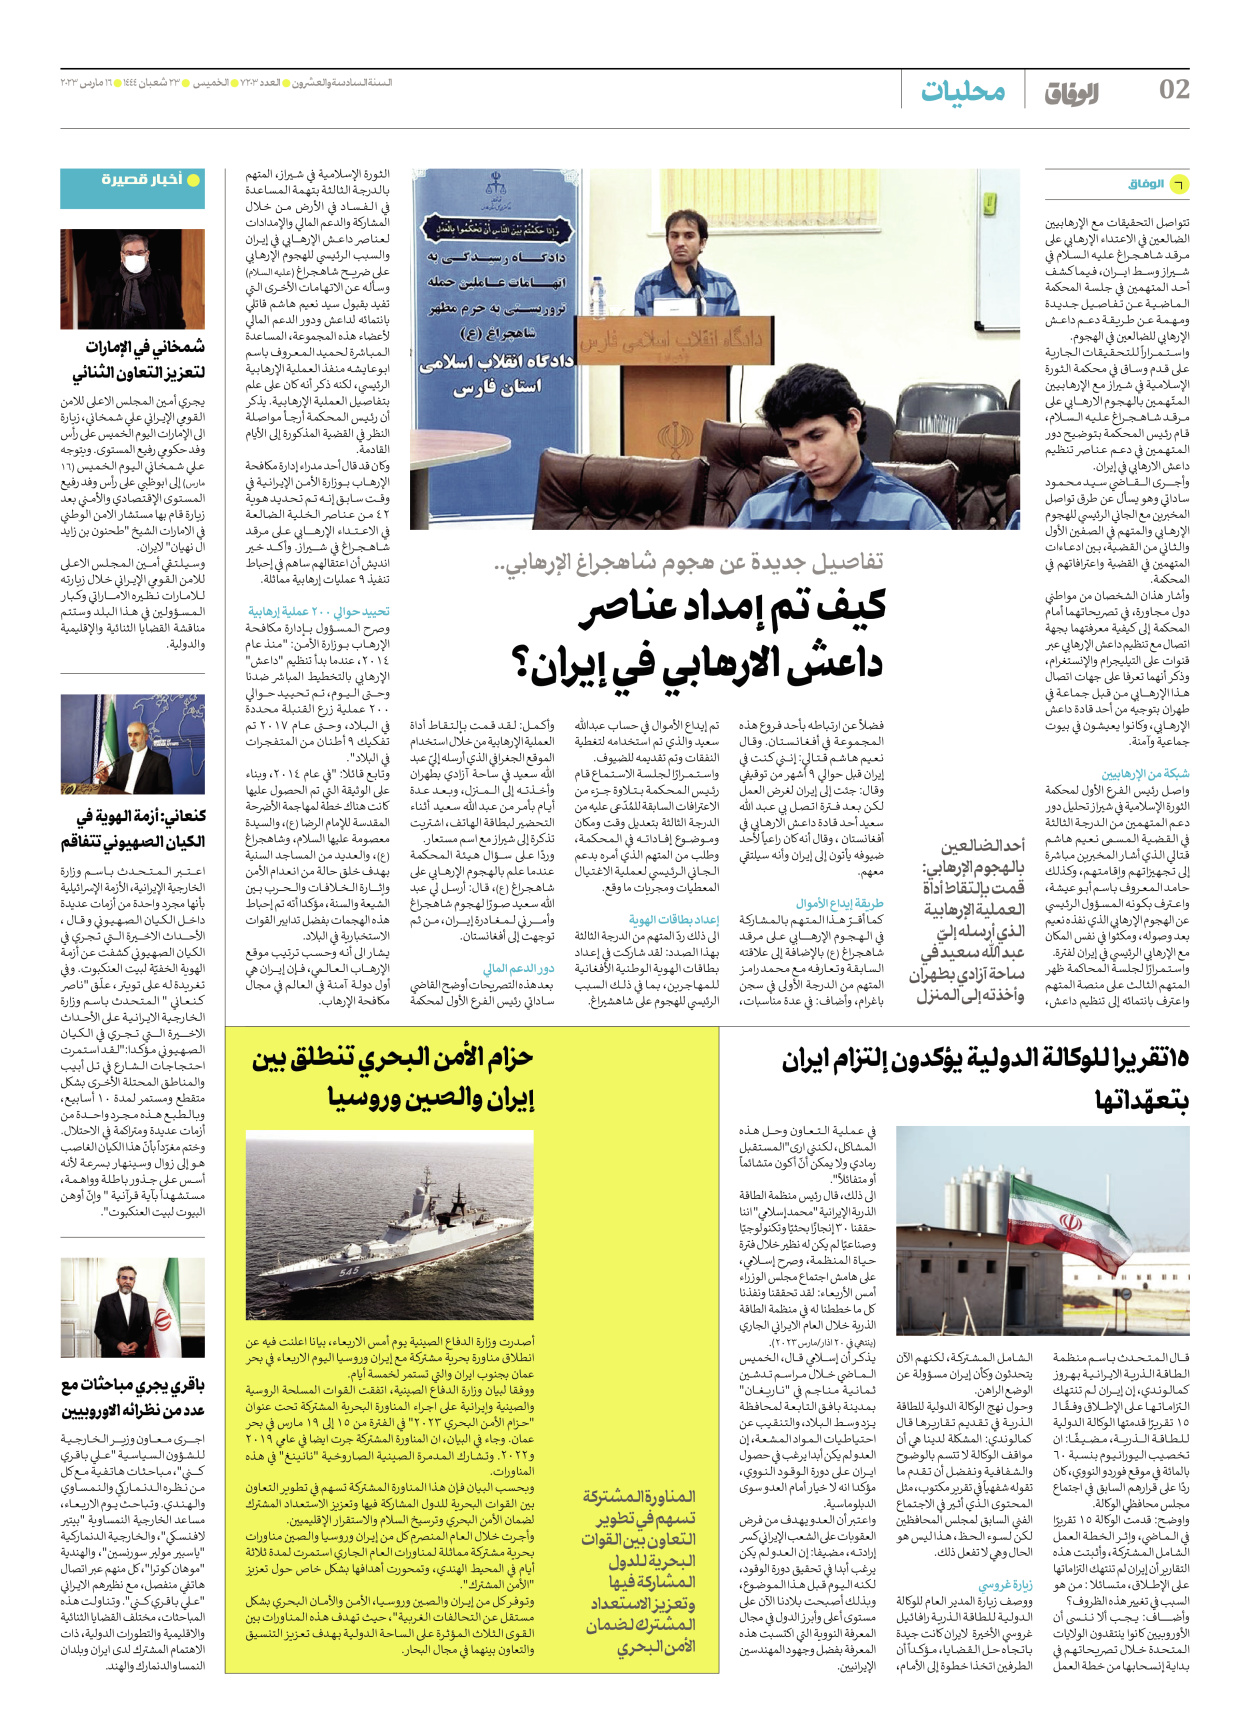 صحیفة ایران الدولیة الوفاق - العدد سبعة آلاف ومائتان وثلاثة - ١٦ مارس ٢٠٢٣ - الصفحة ۲